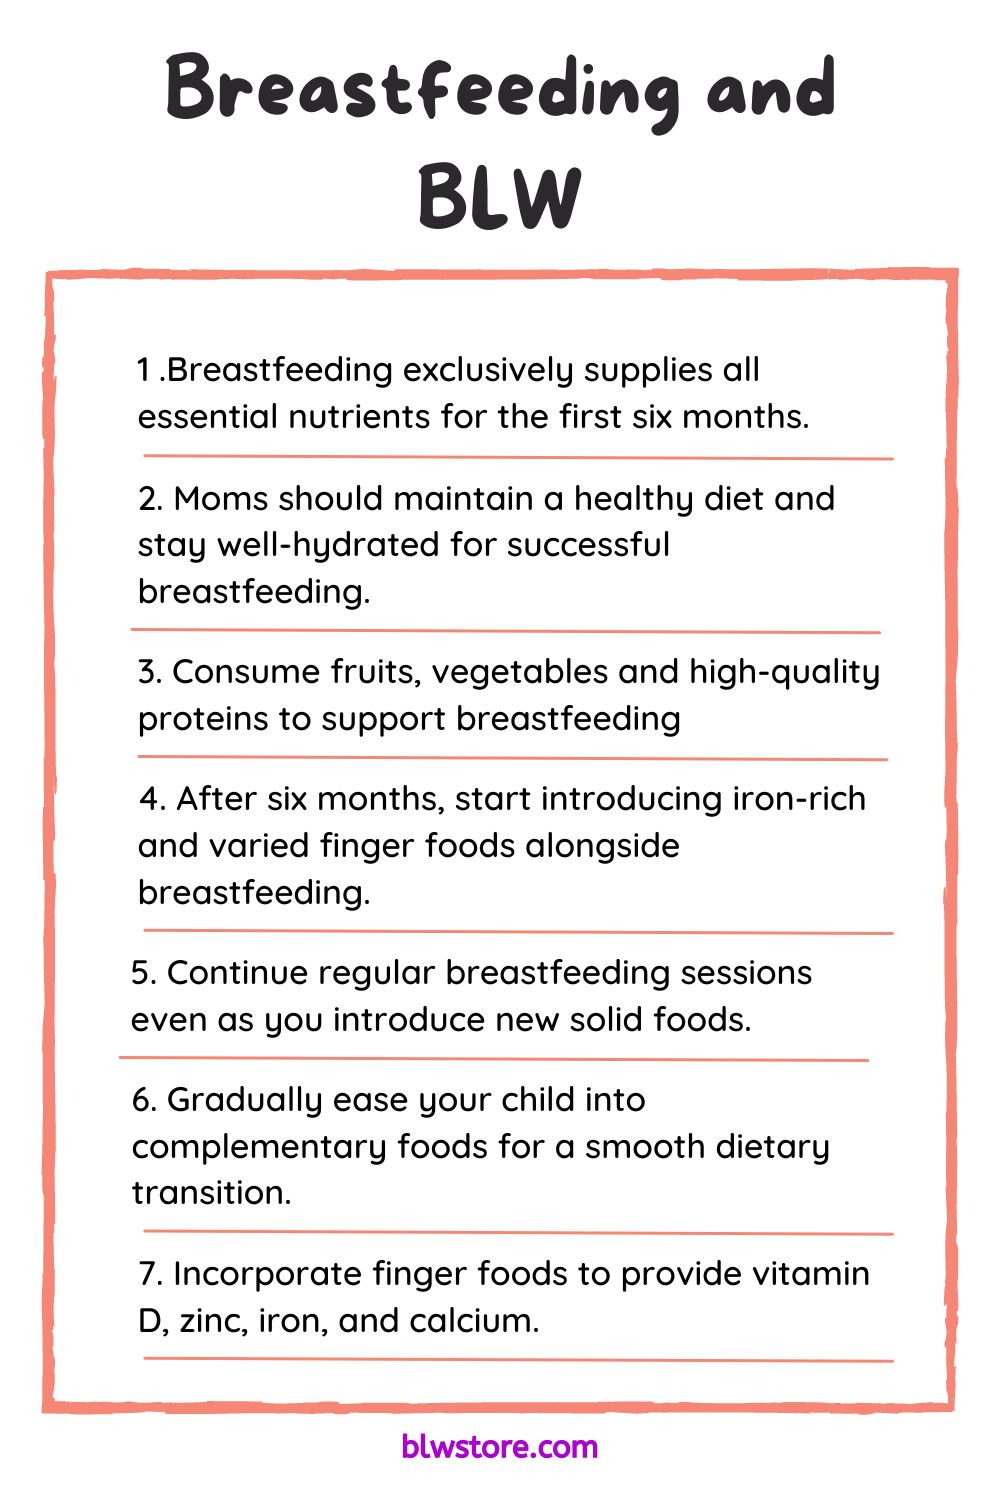 Breastfeeding and BLW